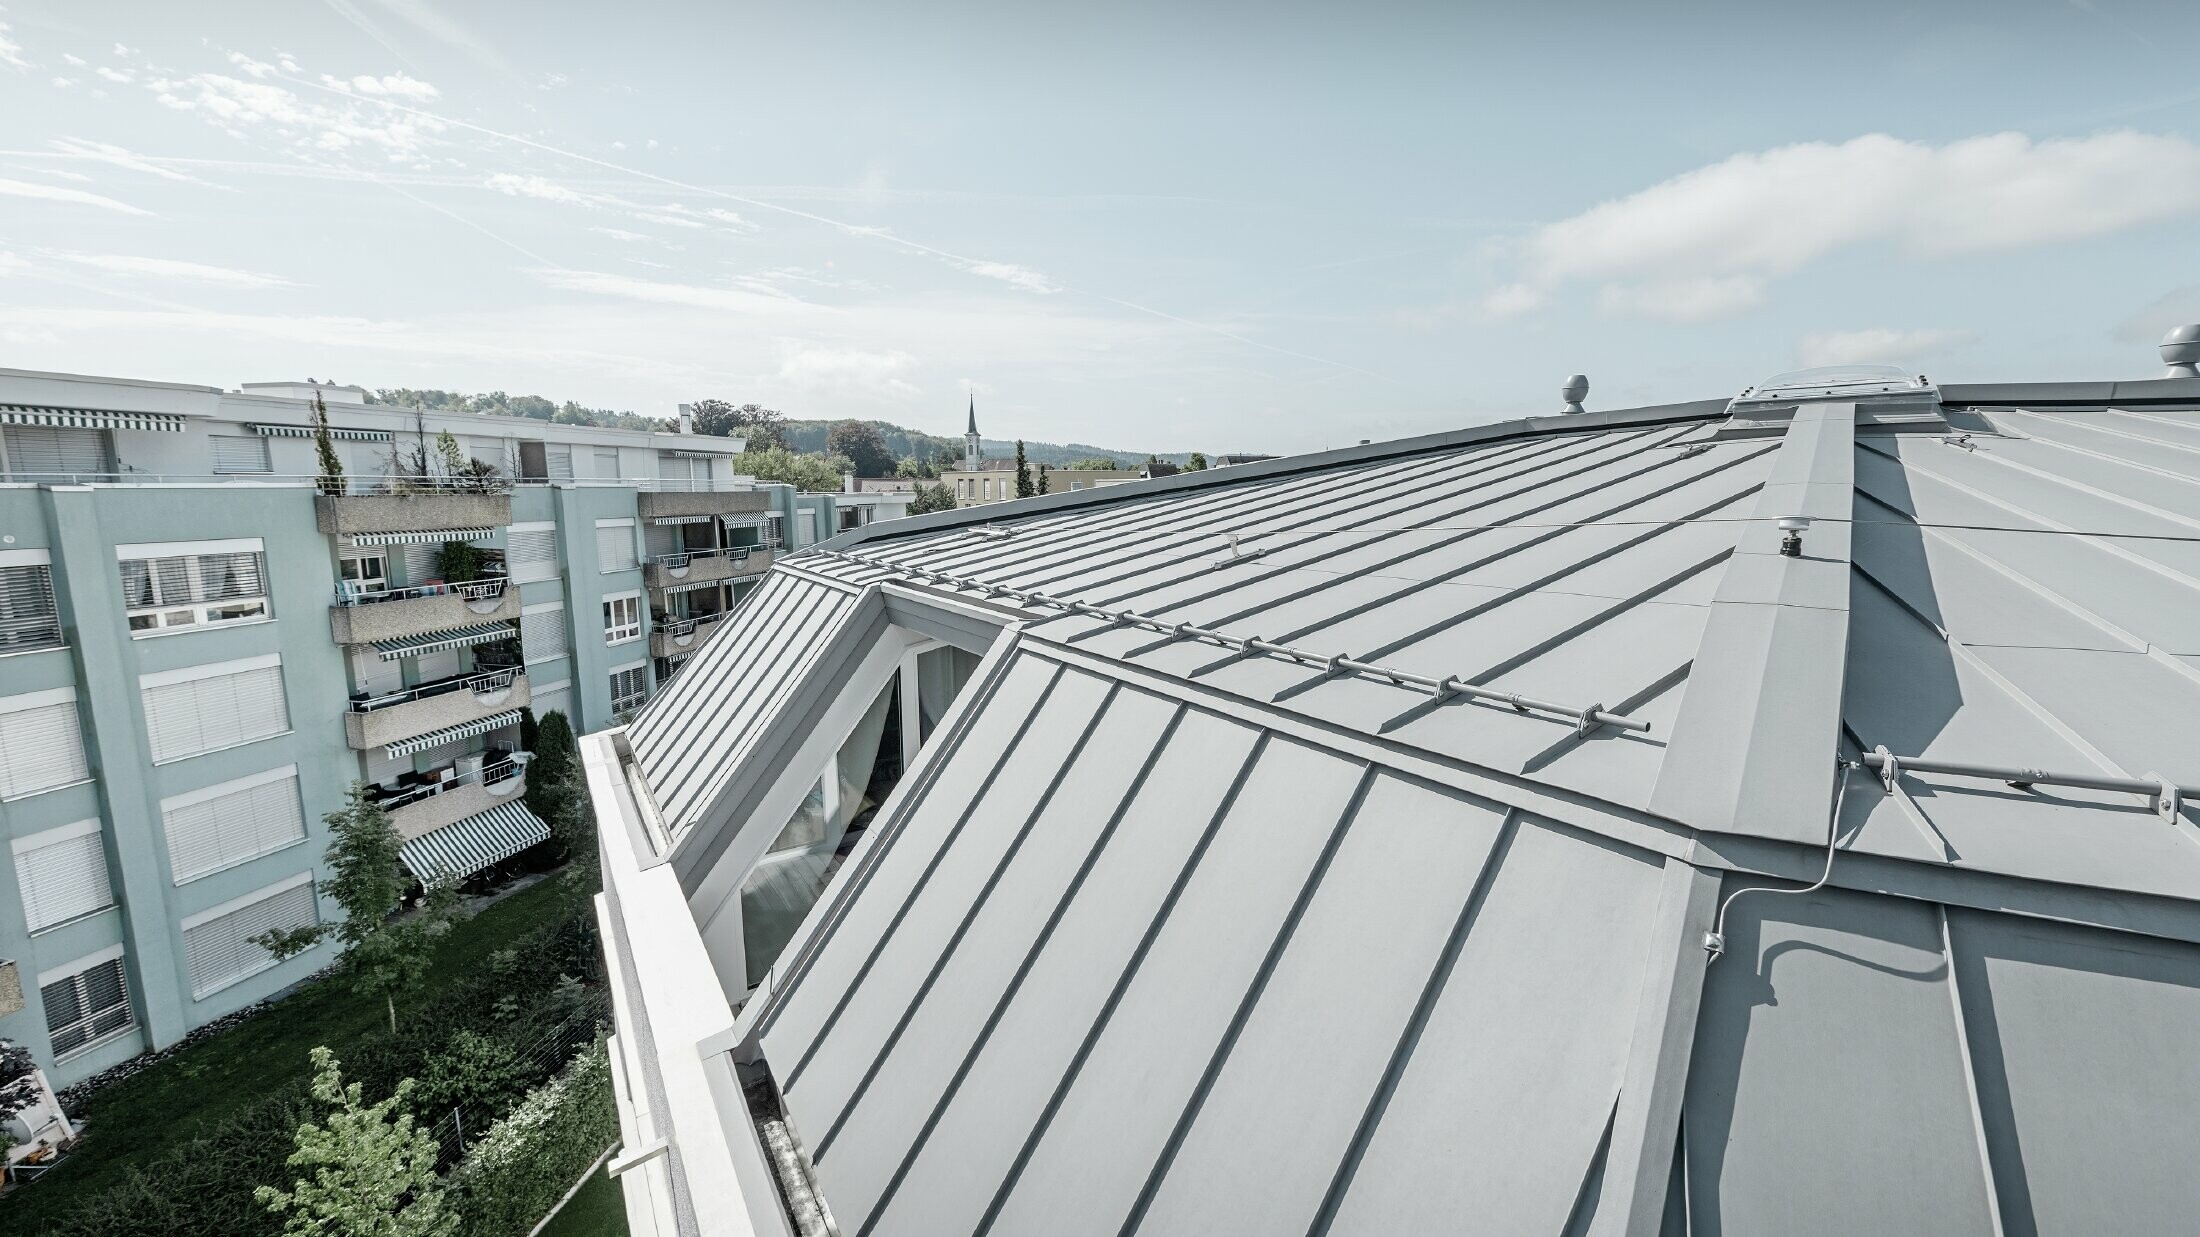 Immagine dettagliata della superficie del tetto di un condominio; tetto con aggraffatura realizzato con Prefalz PREFA in grigio patina.